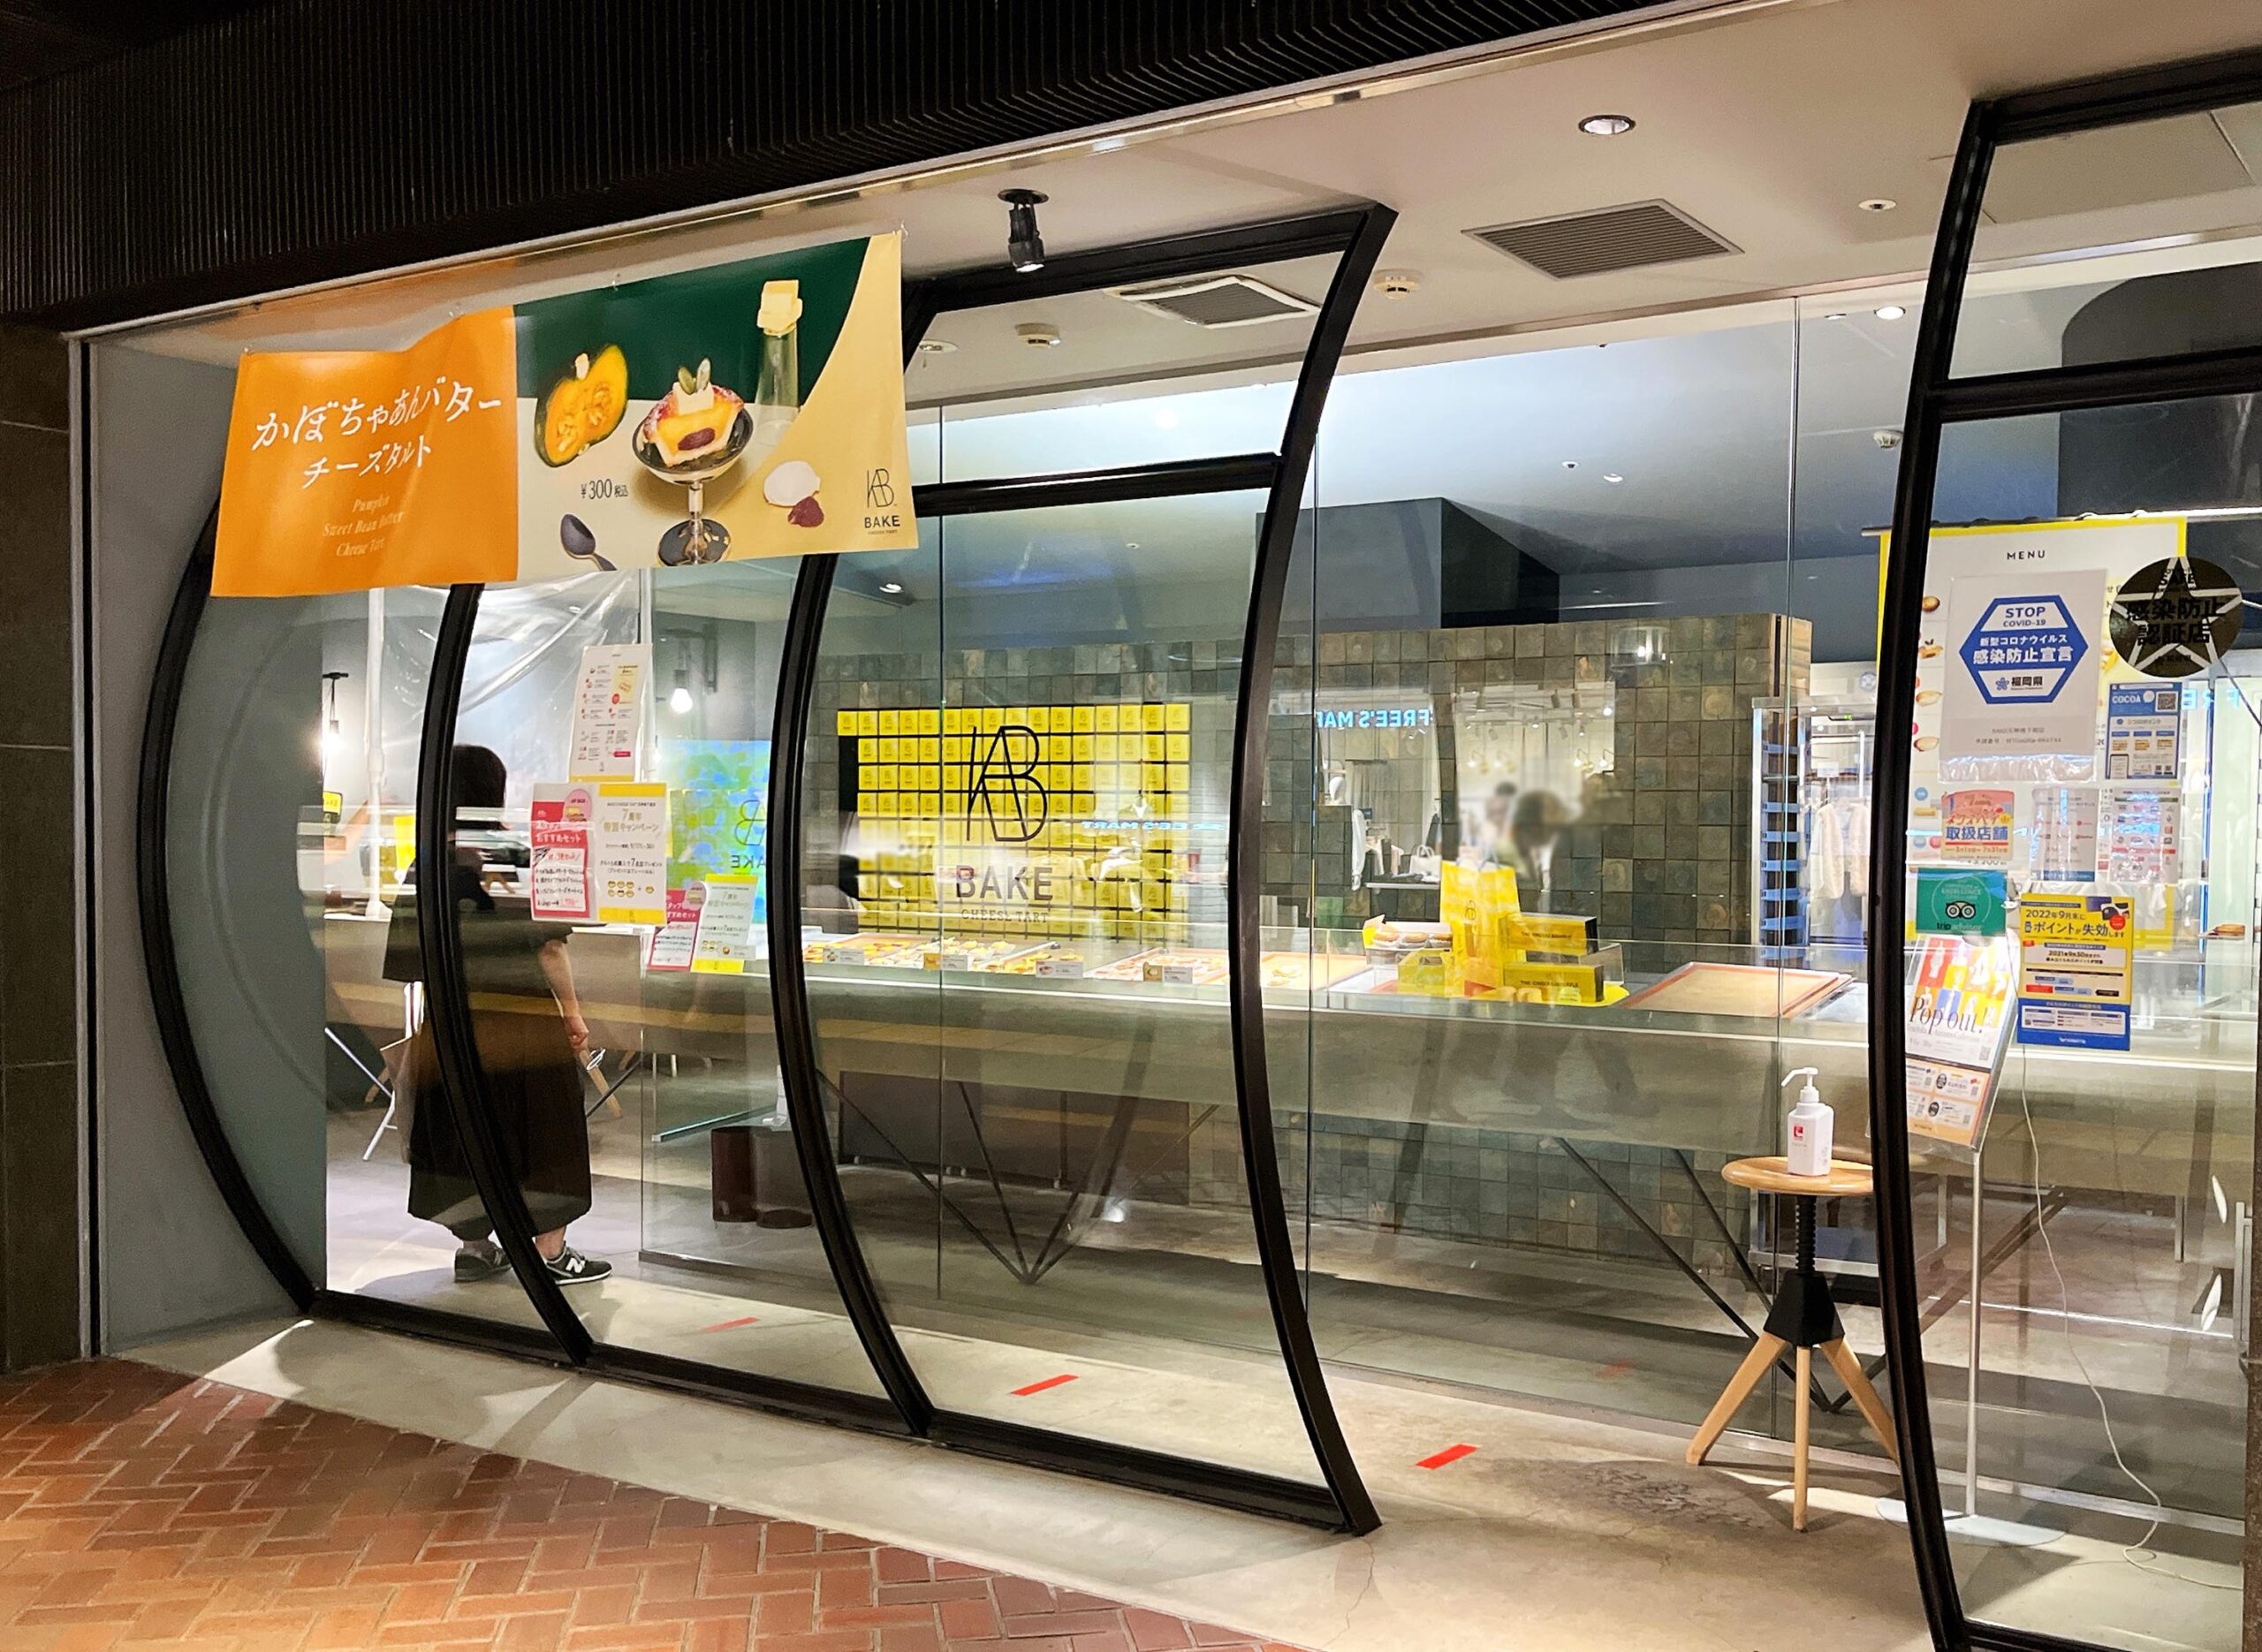 BAKEベイクチーズタルト福岡天神地下街店